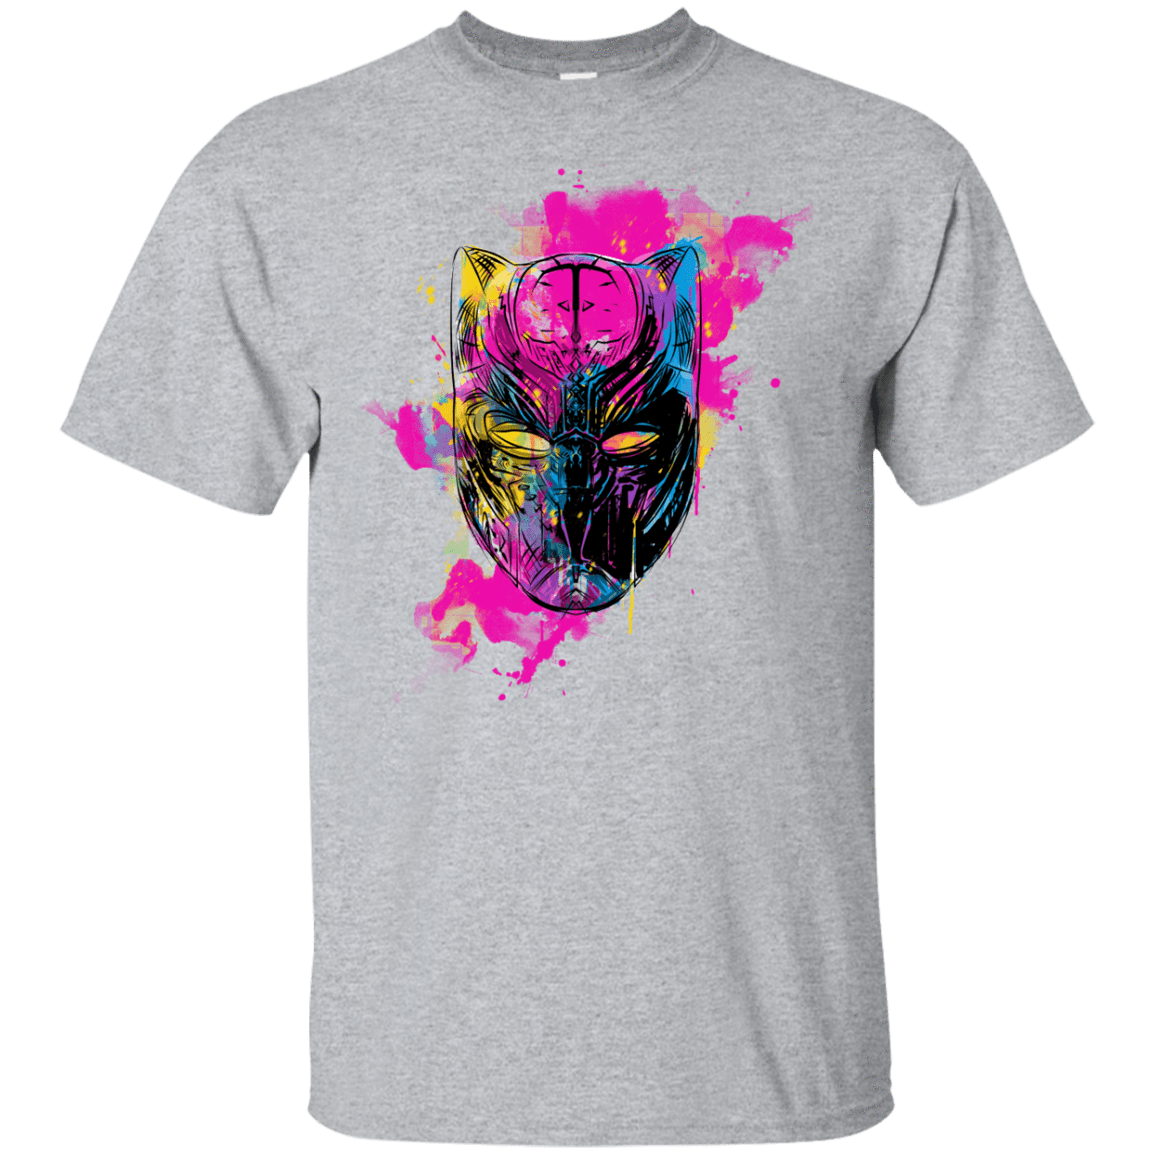 T-Shirts Sport Grey / YXS Graffiti Panther Youth T-Shirt